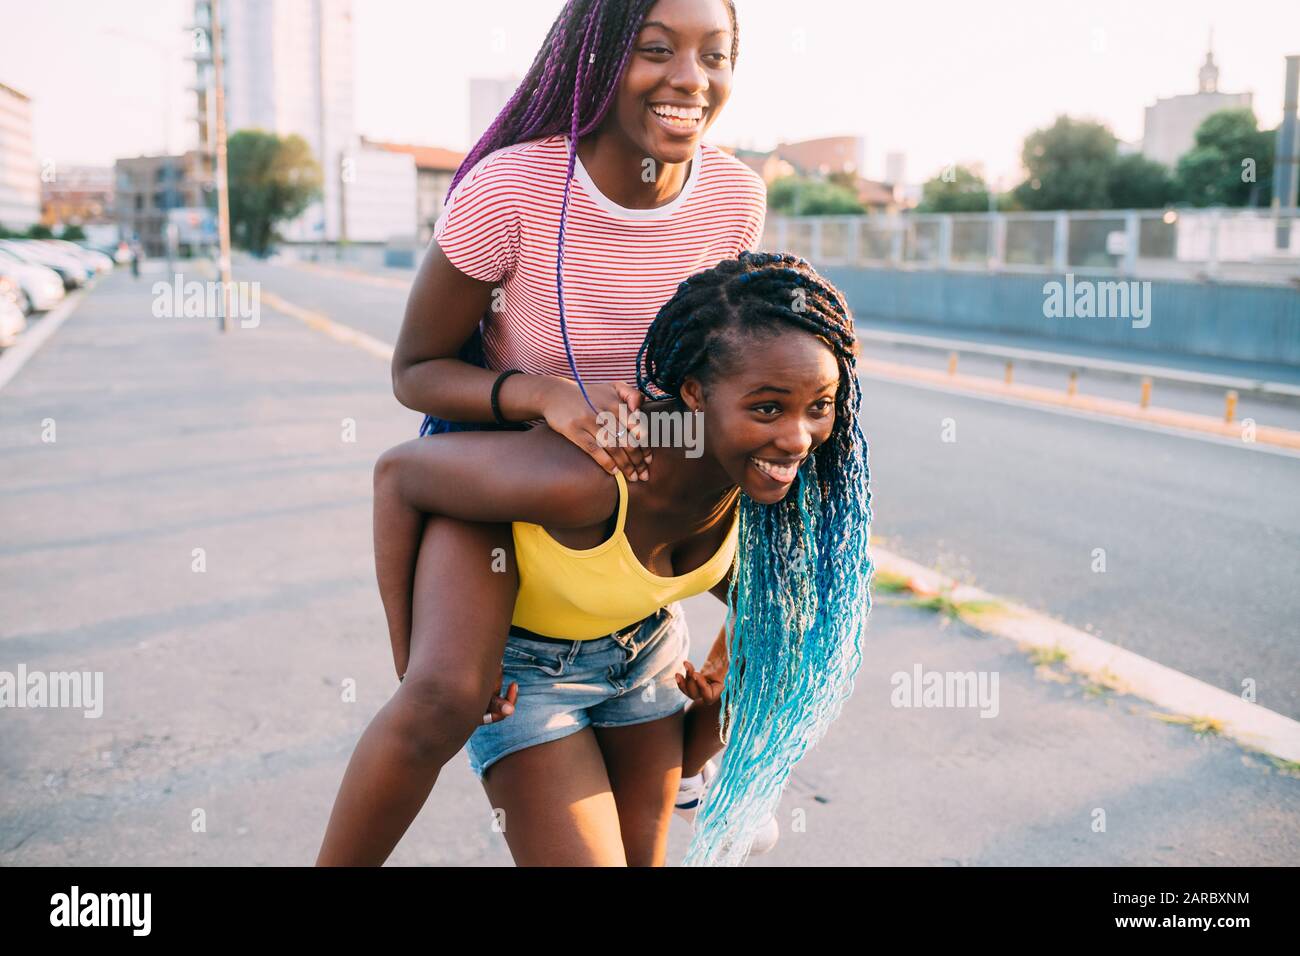 Zwei Schwestern schwarze Frauen im Freien, die Spaß haben, Huckepack zu fahren - Glück, herumtören, Zusammengehörigkeitskonzept Stockfoto